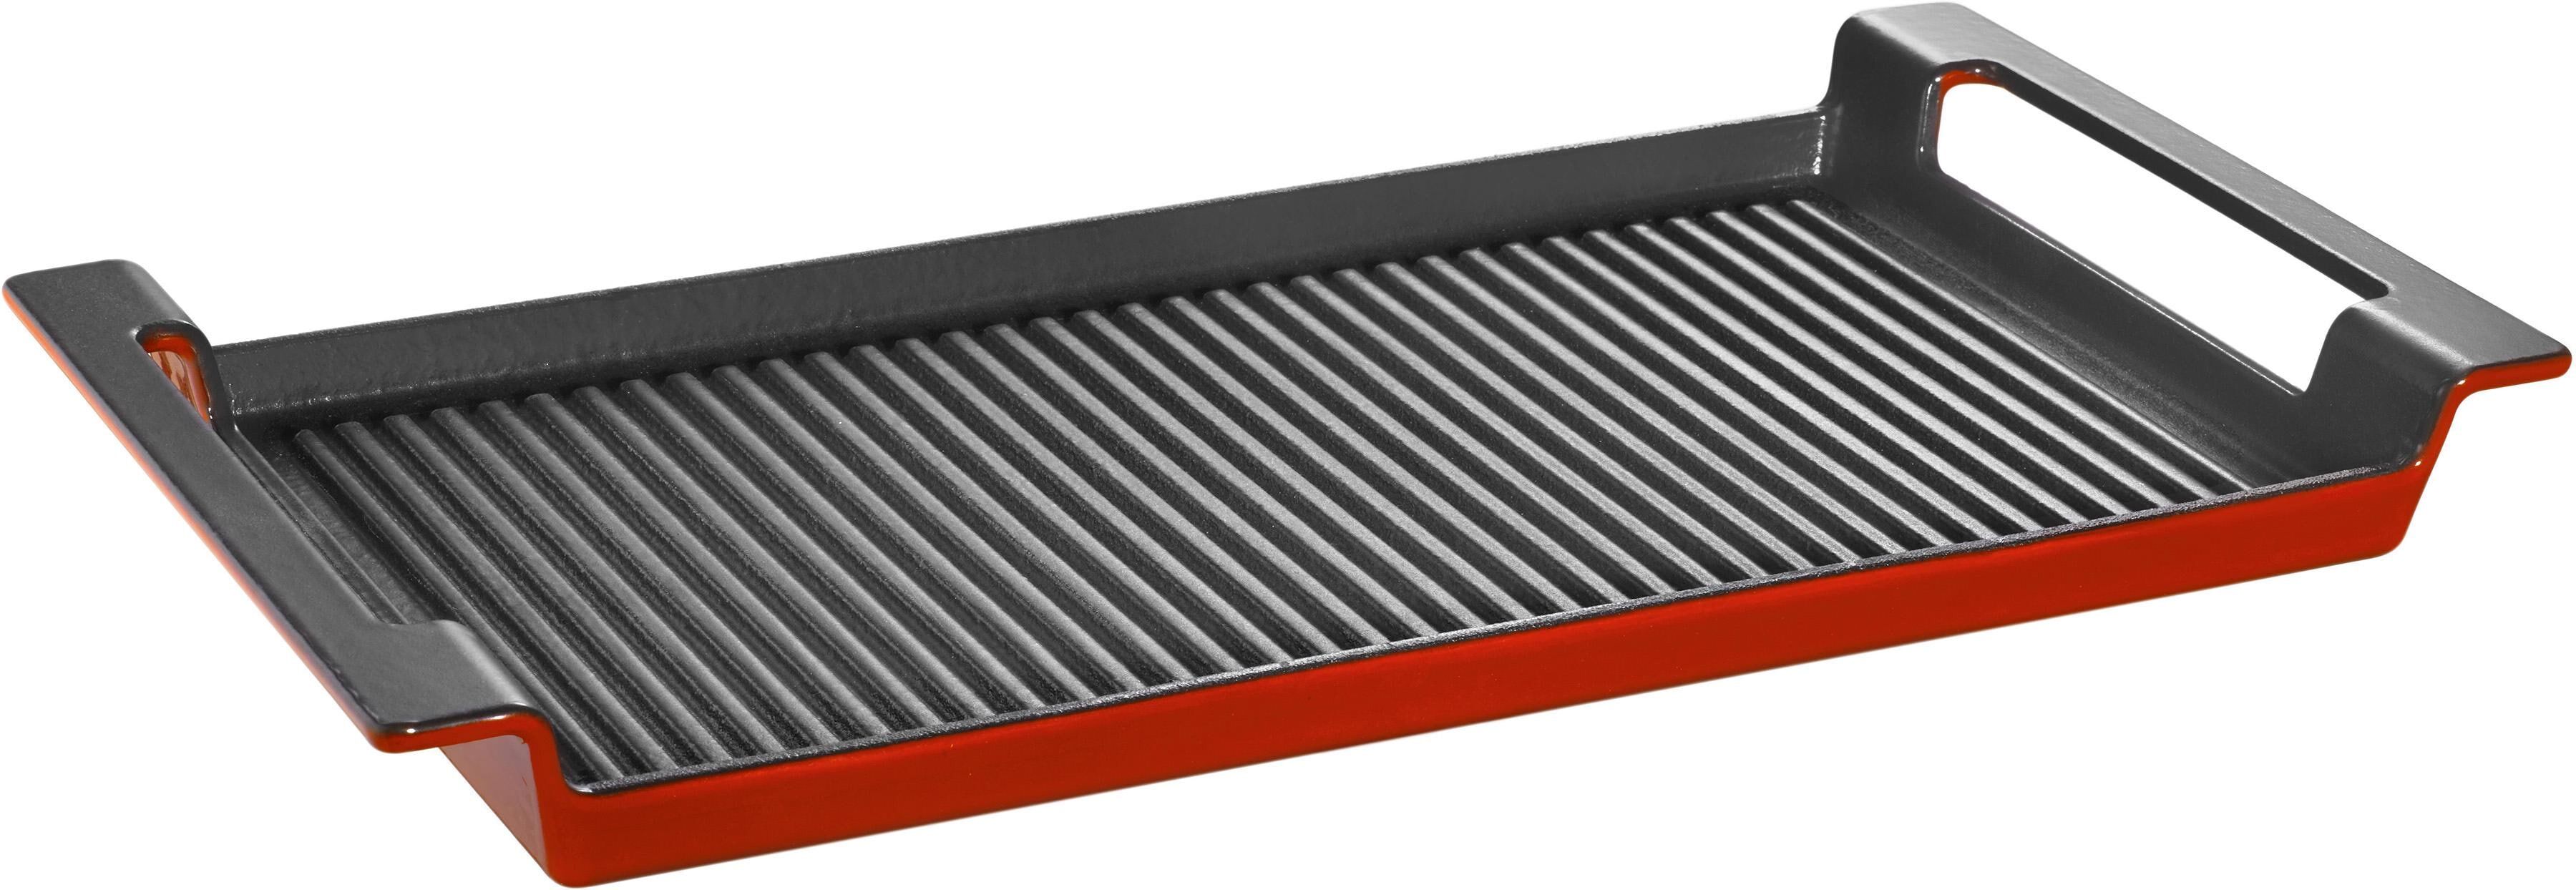 Schulte-Ufer Grillplatte SCHULTE-UFER "Rustika" Grillroste Gr. B: 24 cm, rot (rot, schwarz) Zubehör für Grills Backblech Induktion